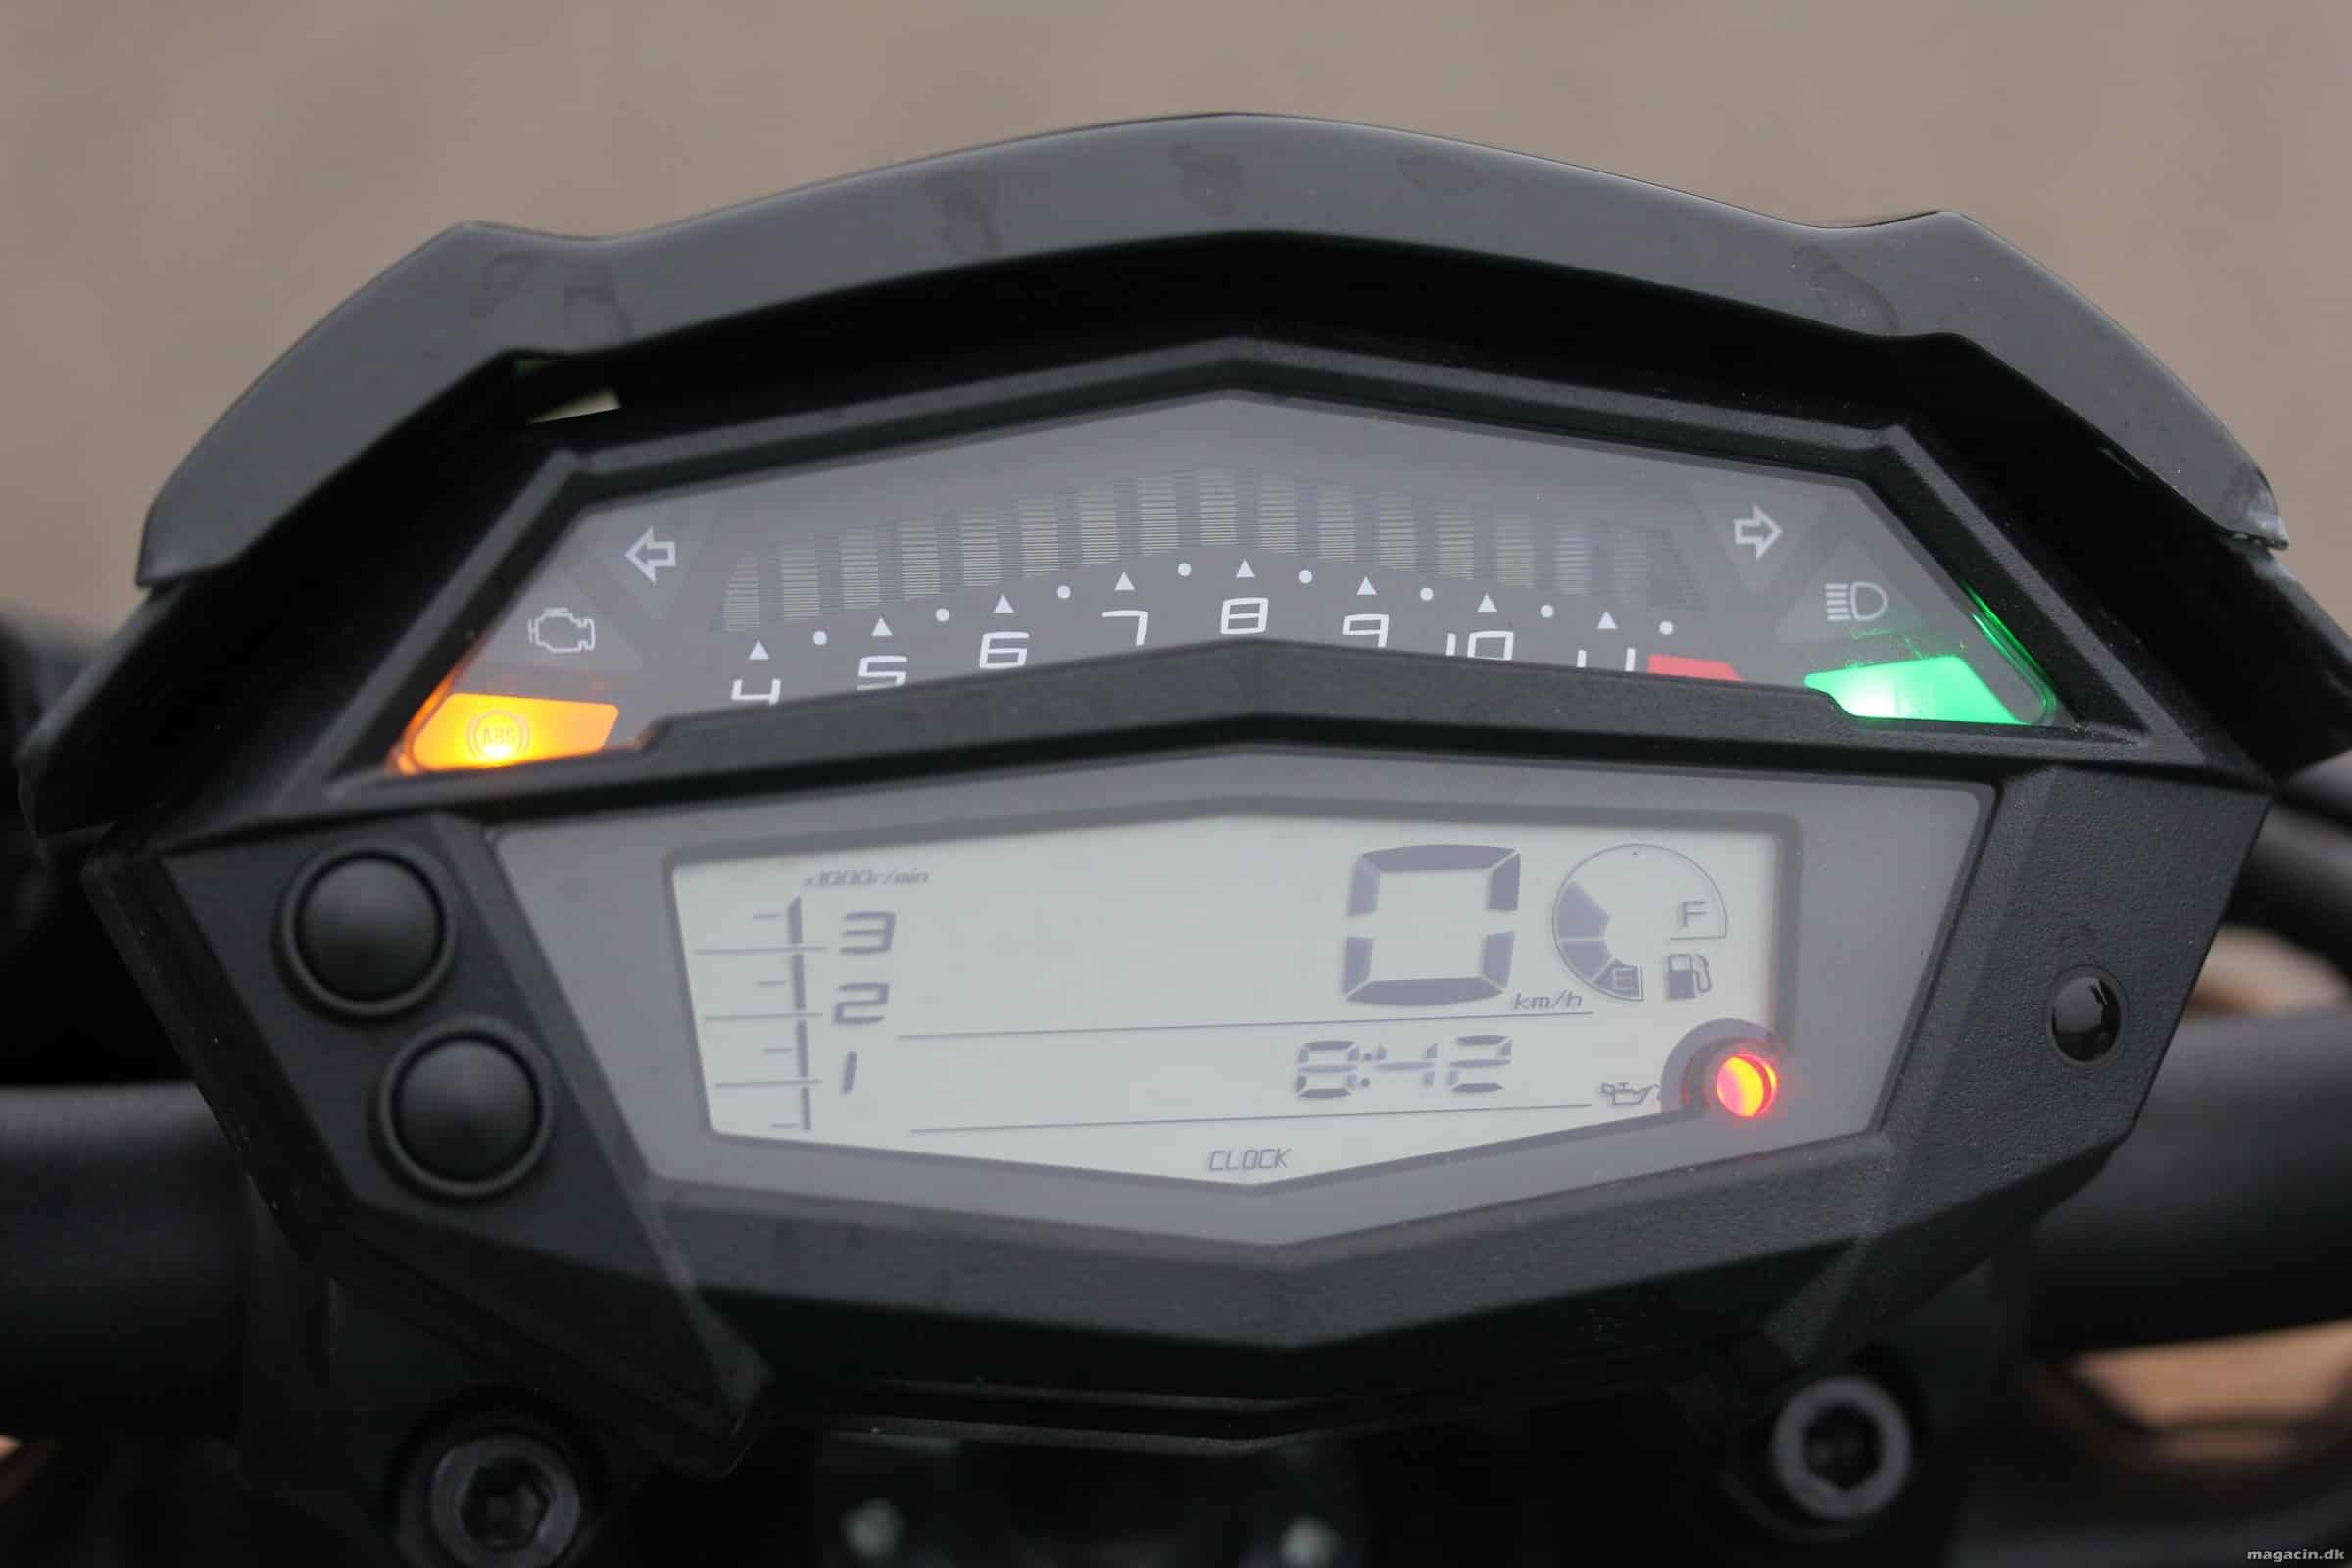 Test: 2014 Kawasaki Z1000 – På nakken af et regulært bæst